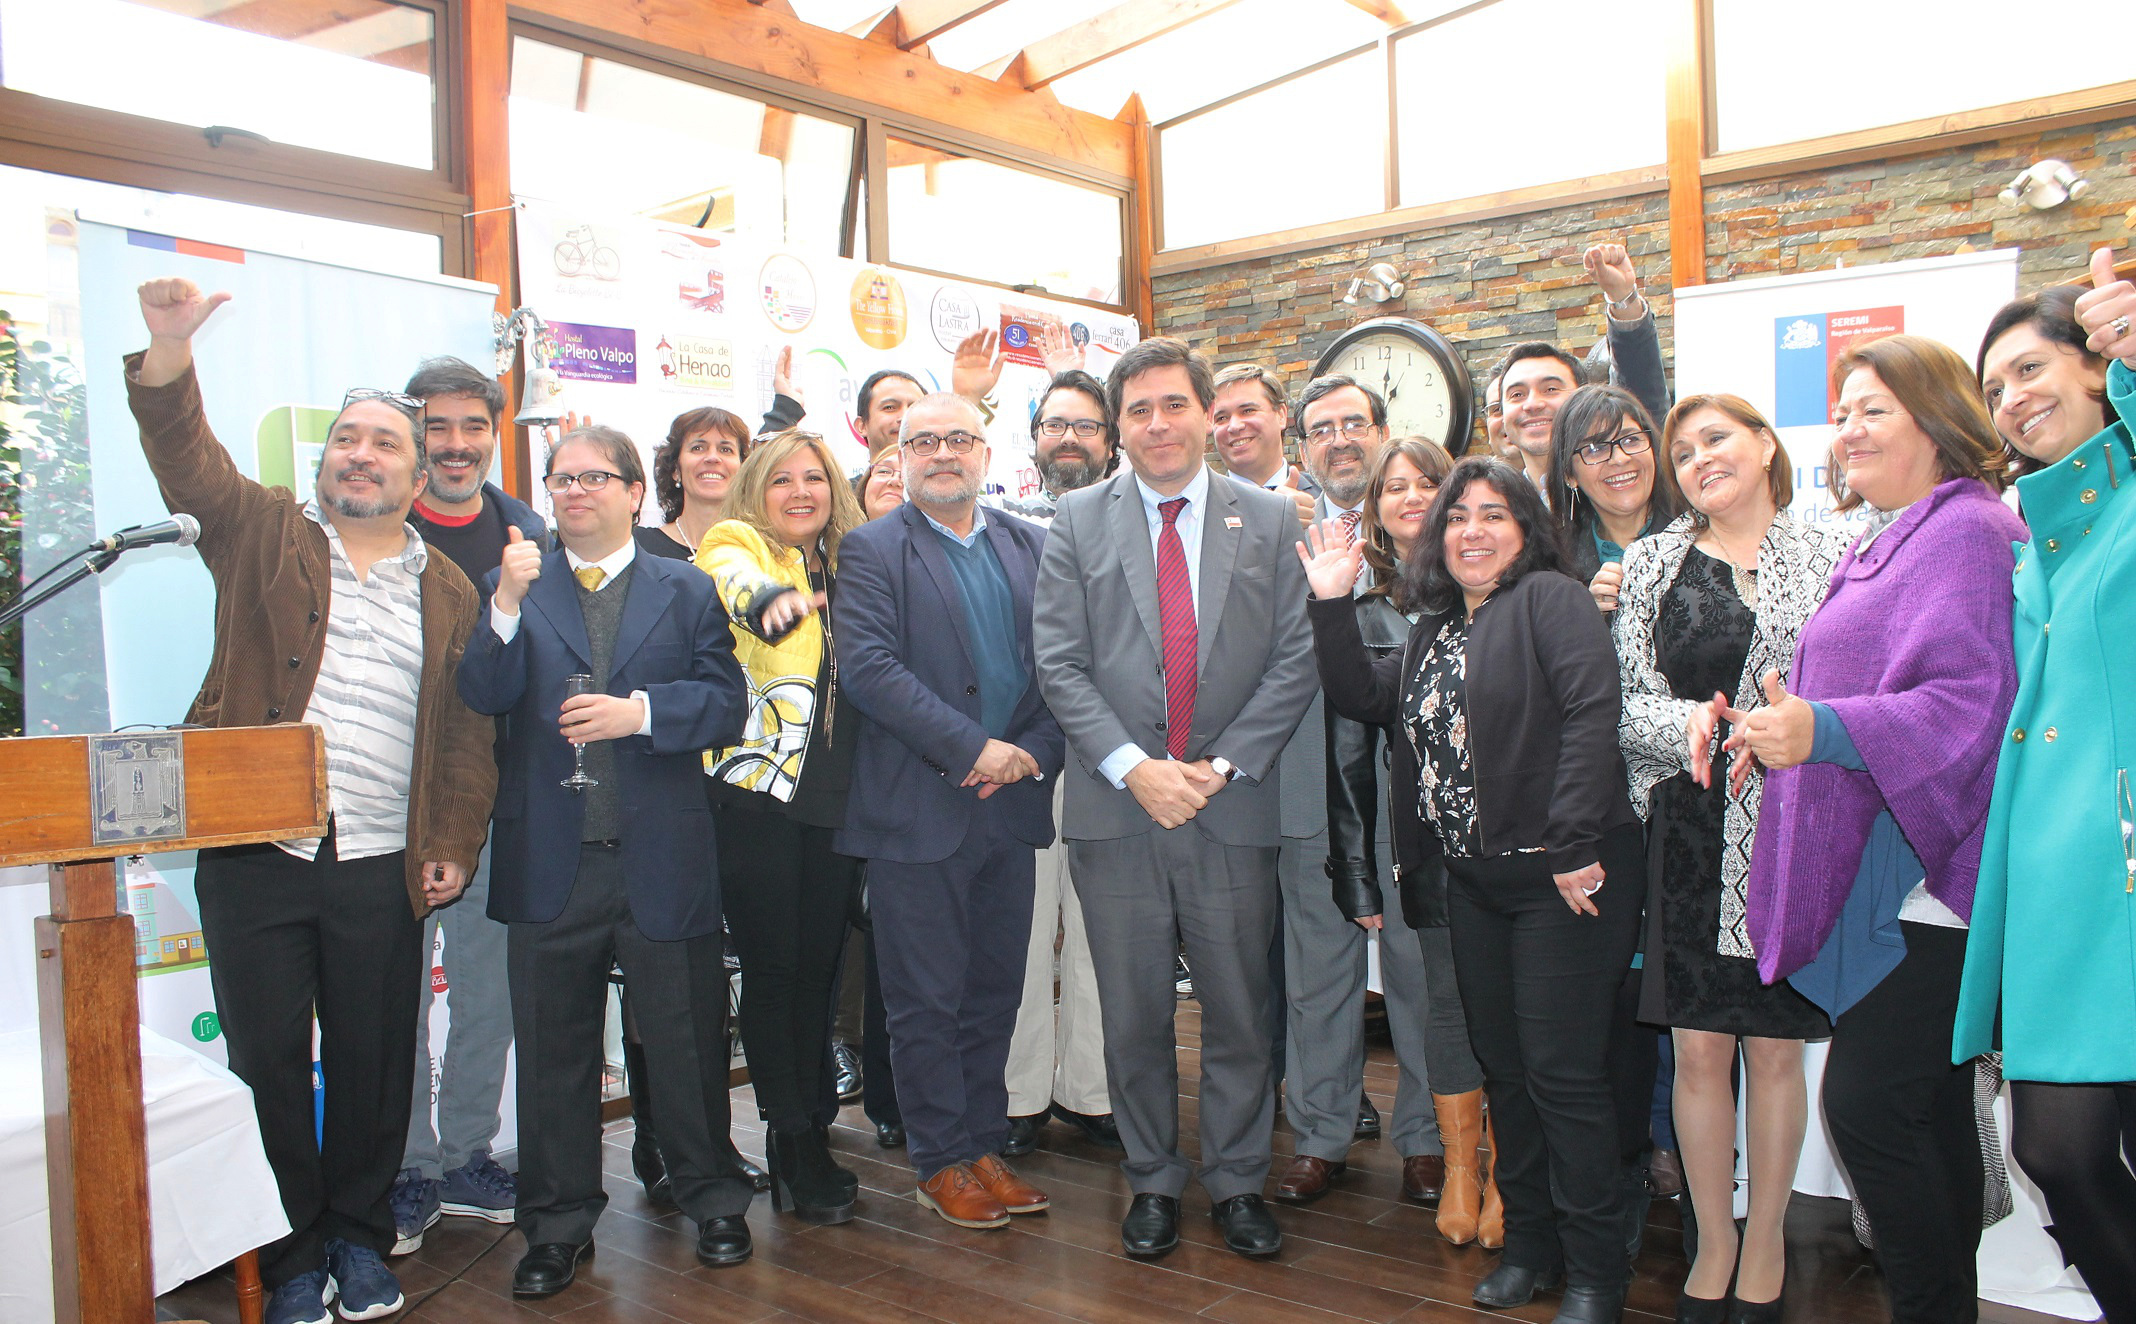 Subsecretario de Energía lideró actividades enmarcadas en Programa Gestiona Energía en su visita a la Región de Valparaíso